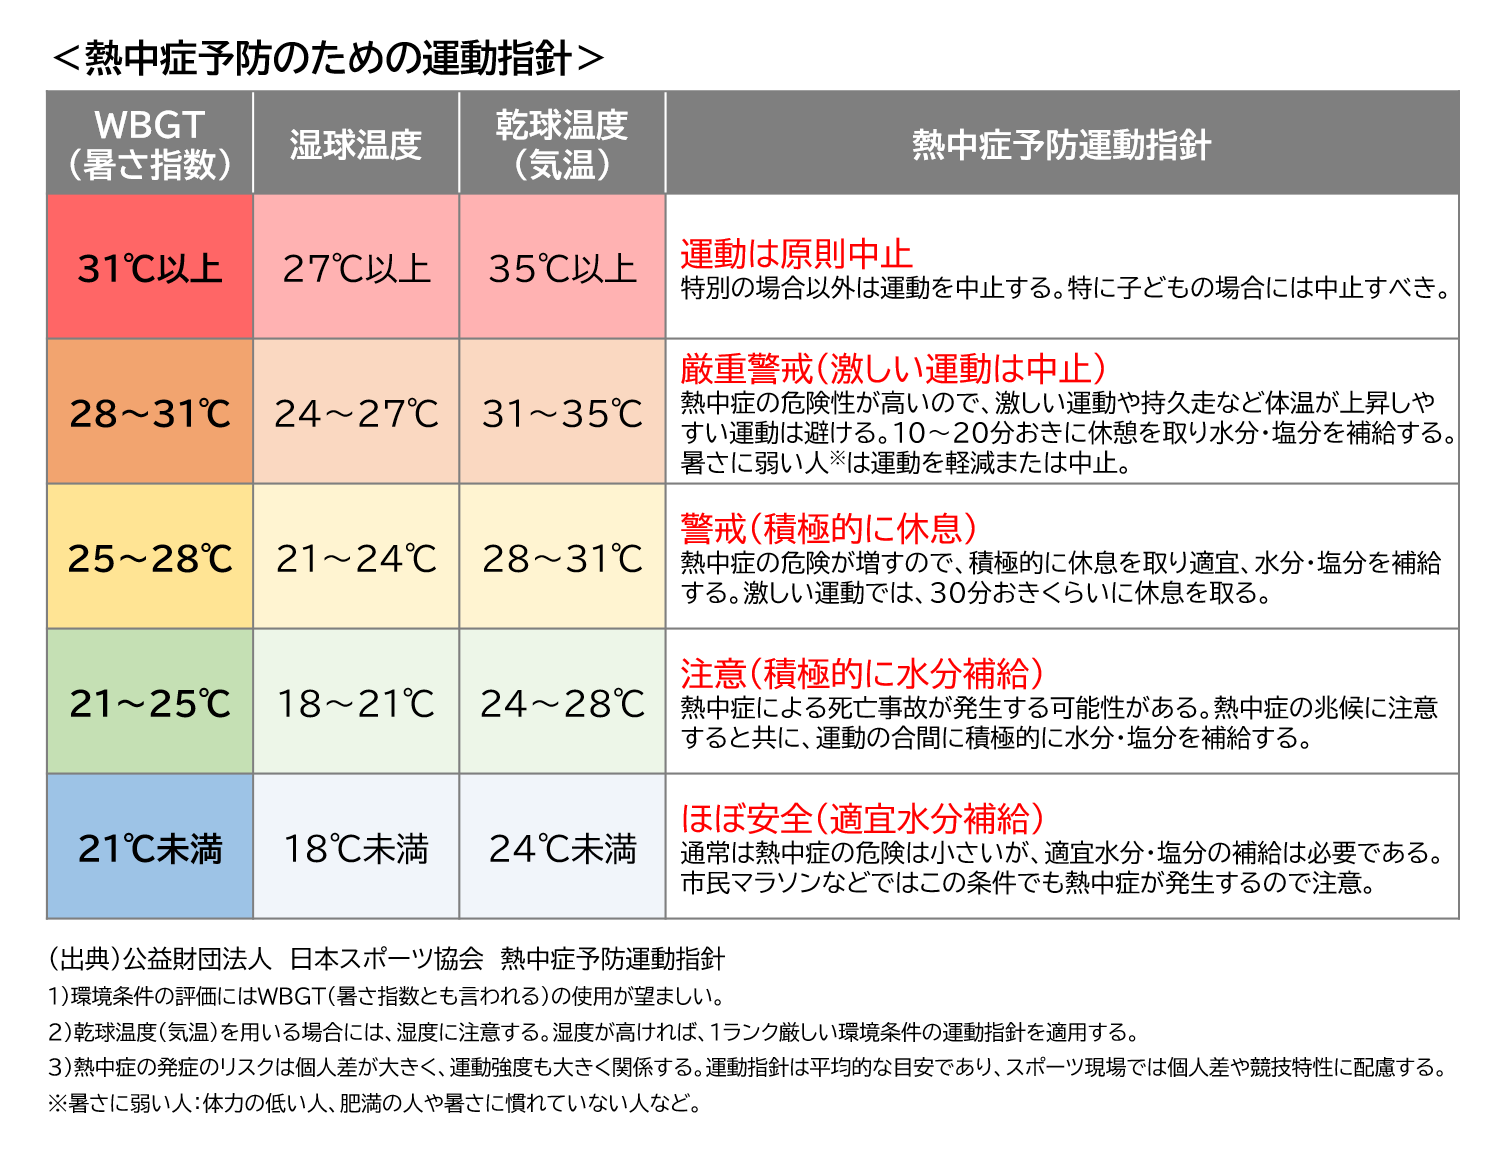 熱中症予防のための運動指針。WBGT（暑さ指数）、湿球温度、乾球温度（気温）で環境条件を評価。